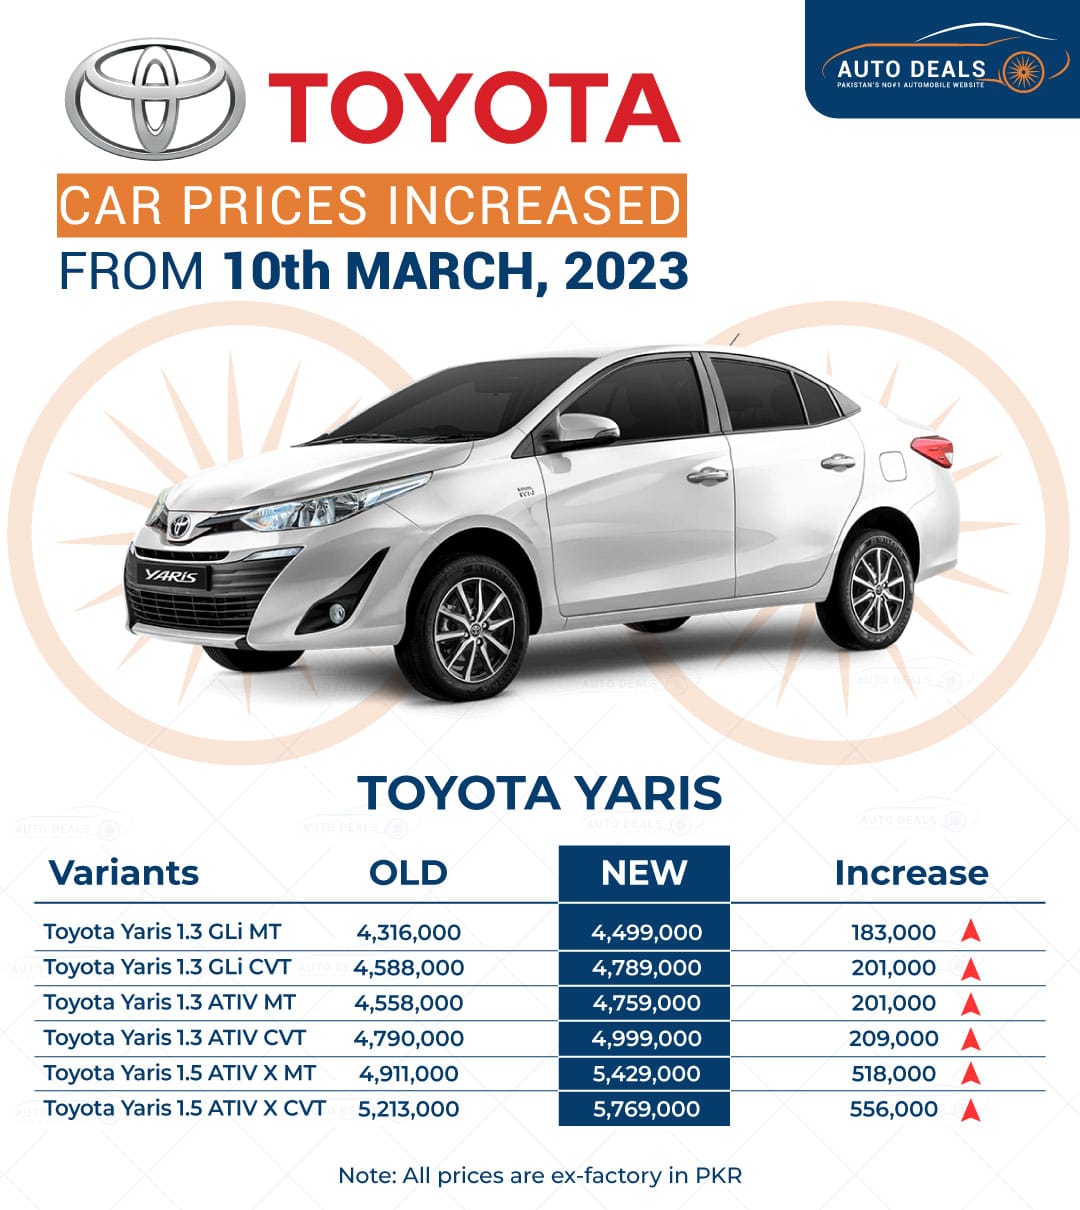 Toyota Yaris New Price